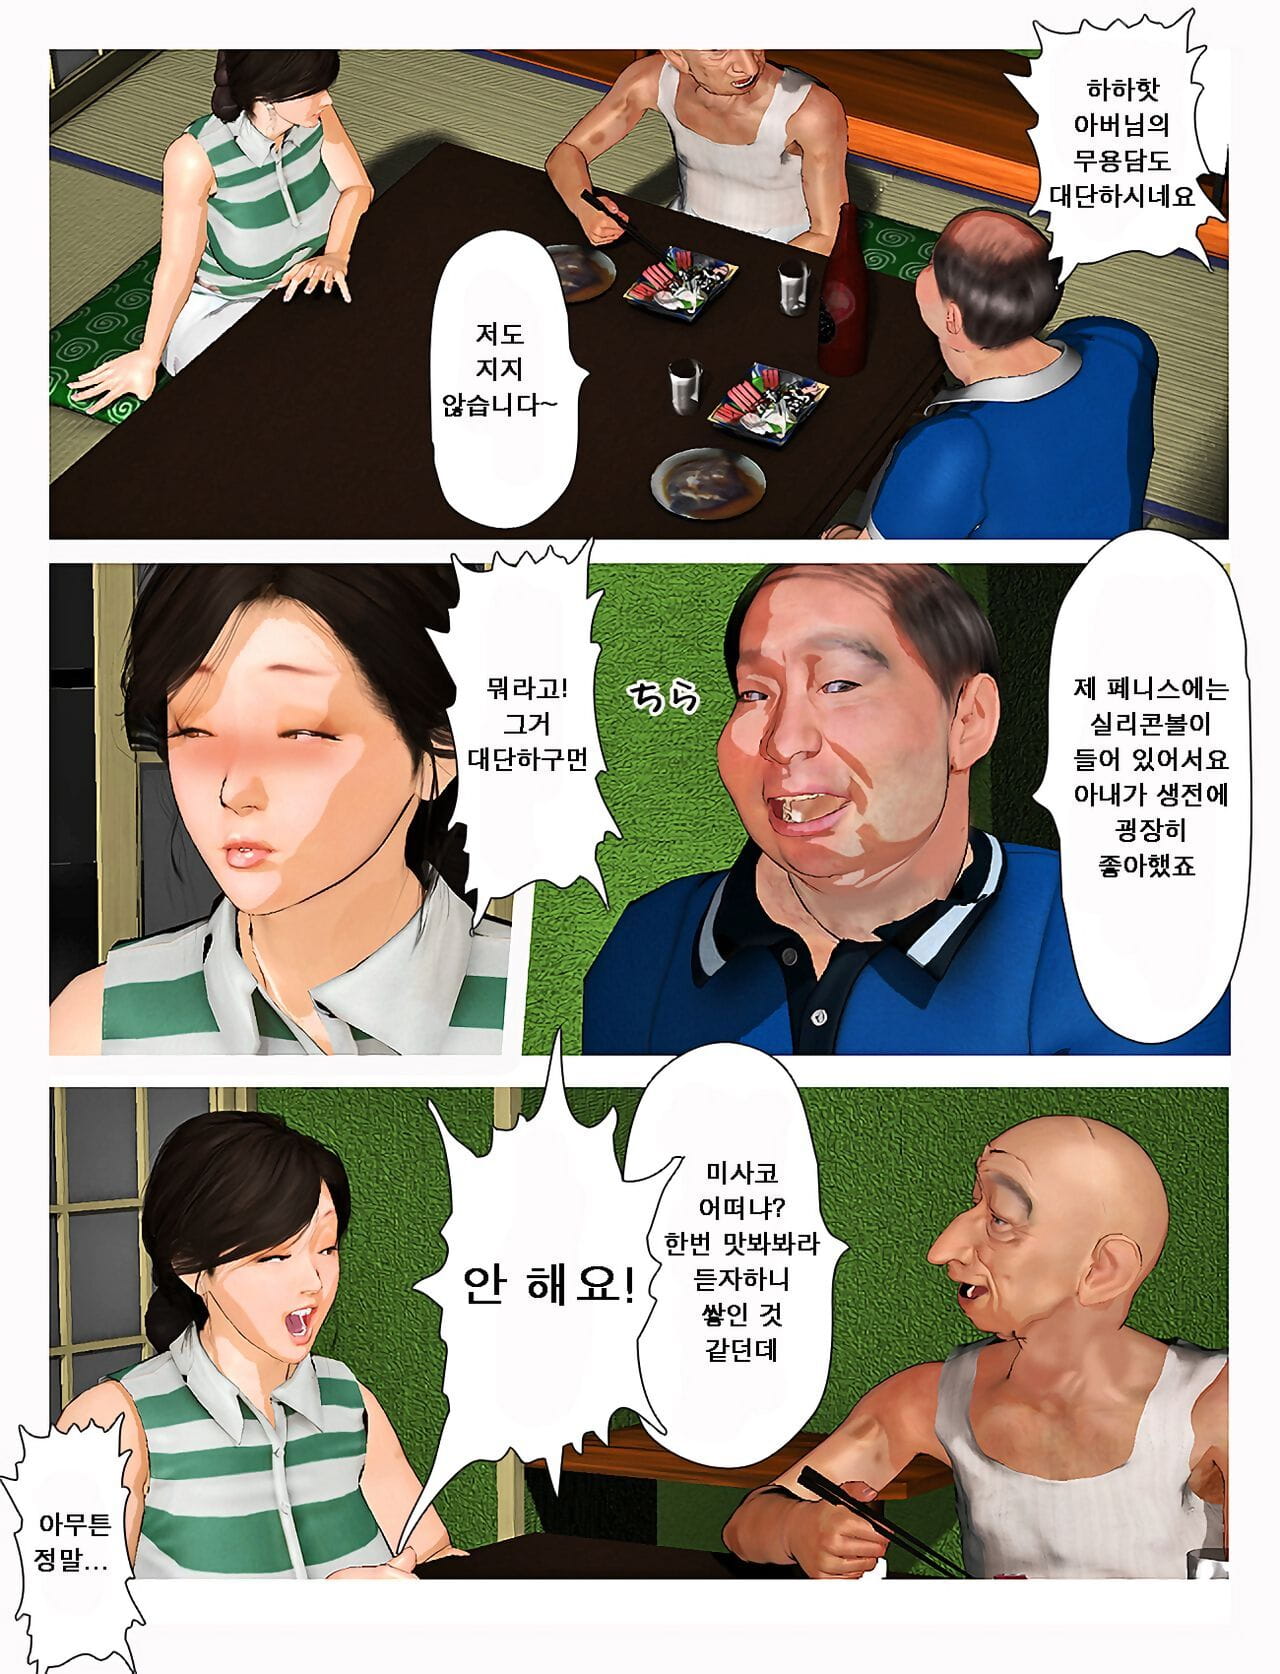 Kyou कोई सह के साथ खेलना! सं 2019:2 오늘의 미사코씨 2019:2 page 1